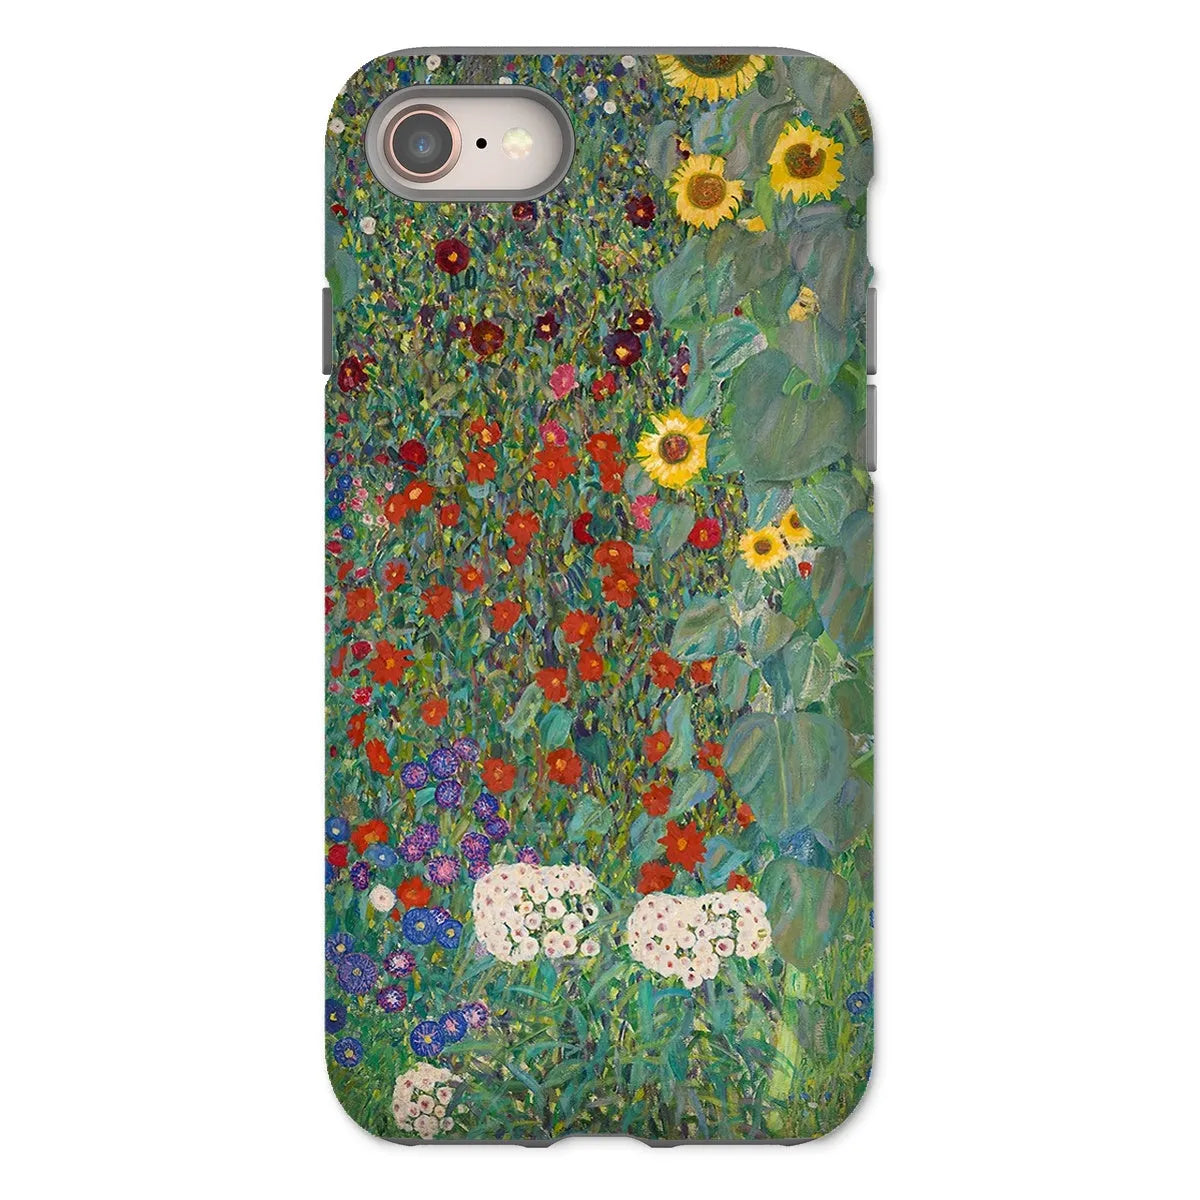 Farm Garden With Sunflowers Art Phone Case - Gustav Klimt - Iphone 8 / Matte - Mobile Phone Cases - Aesthetic Art